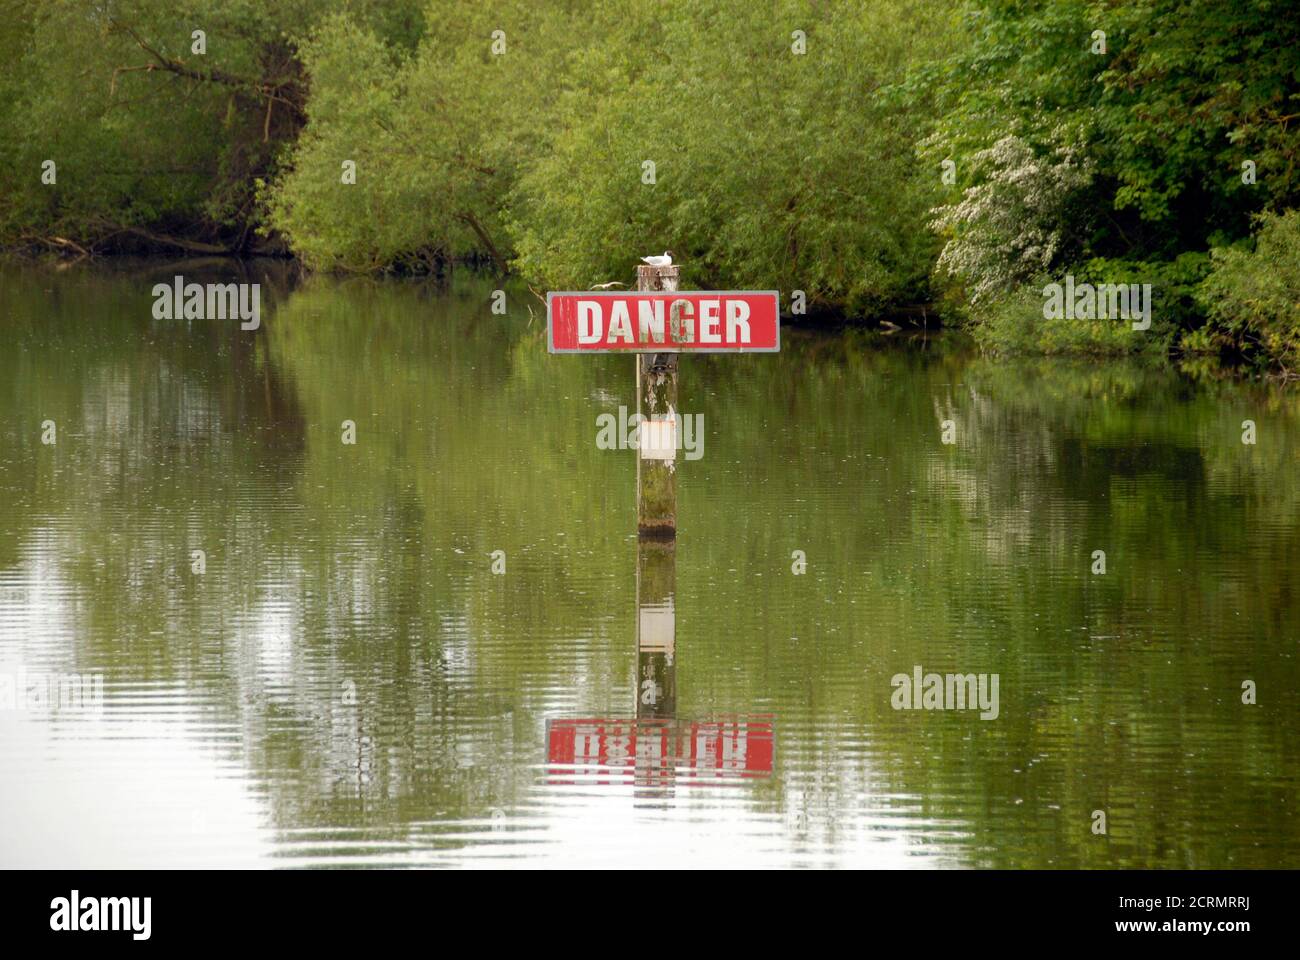 Pericolo segno in acqua del fiume Tamigi in Oxfordshire, Inghilterra senza evidenza di ciò che il pericolo è e con uccello resing sul posto Foto Stock